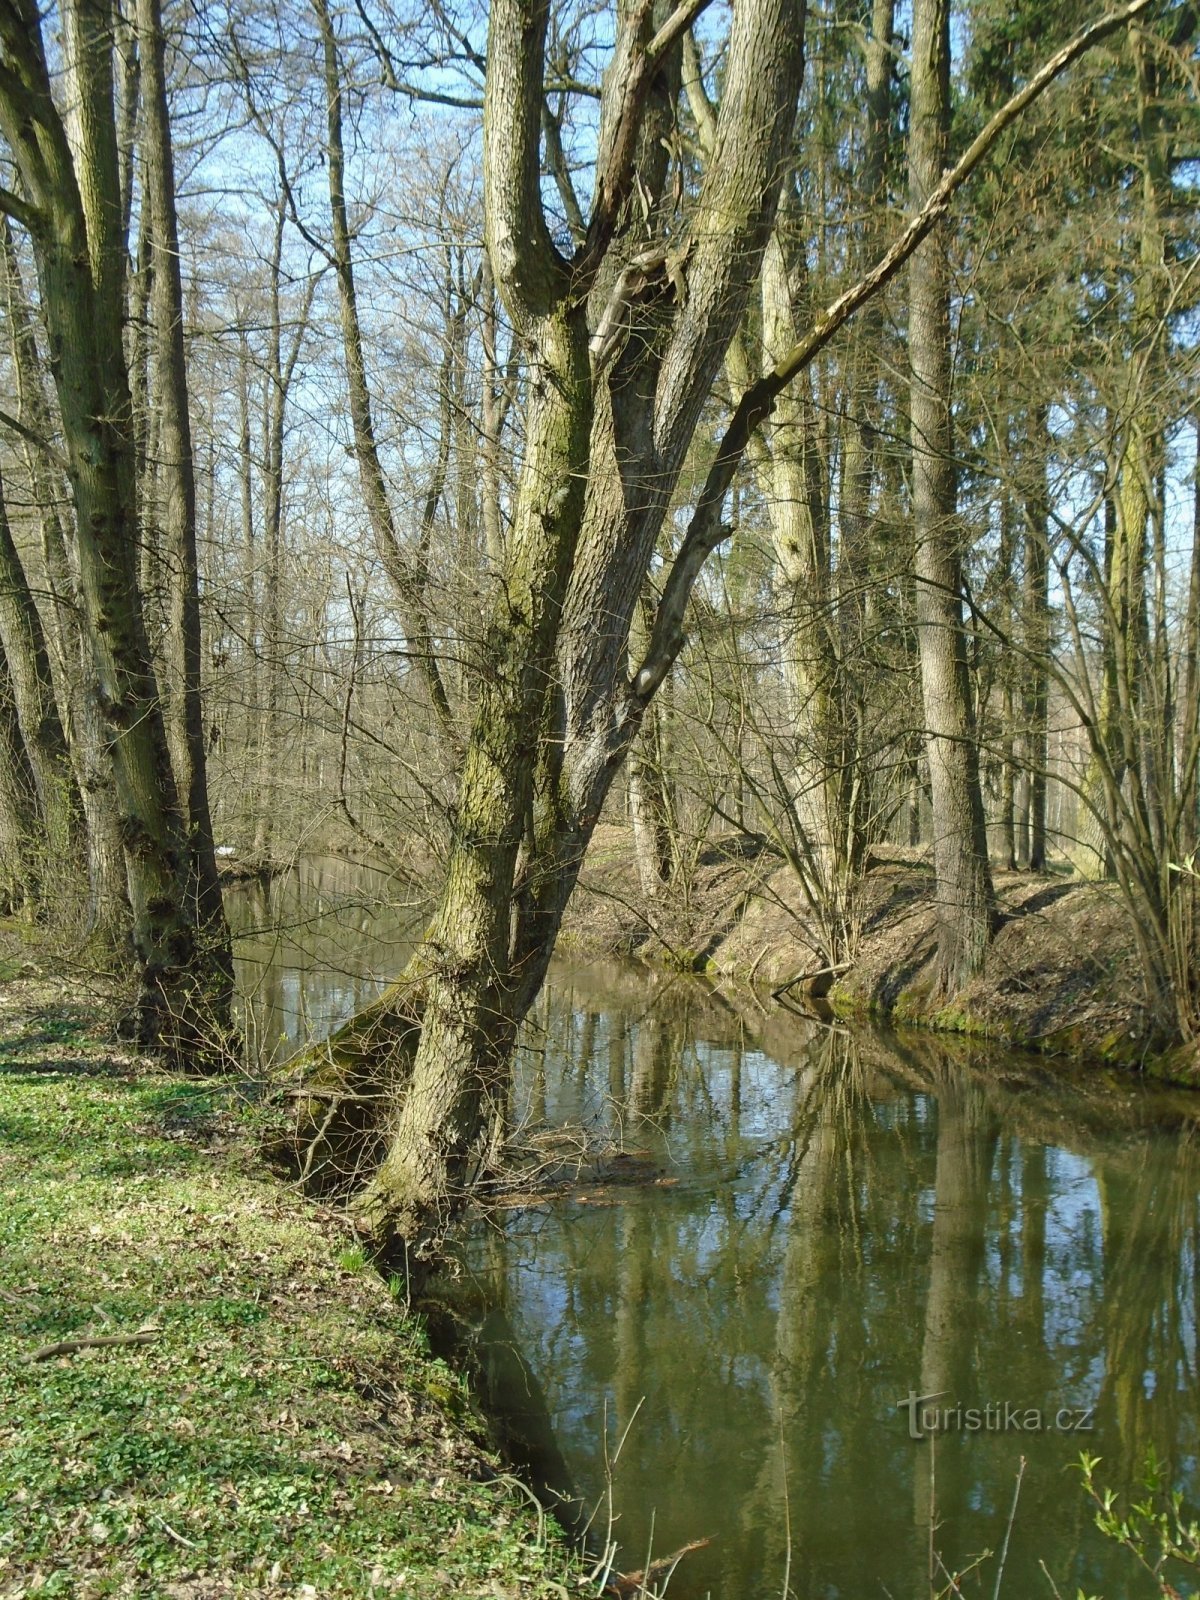 Canal Opatovice près de Kulhánov (Čeperka)